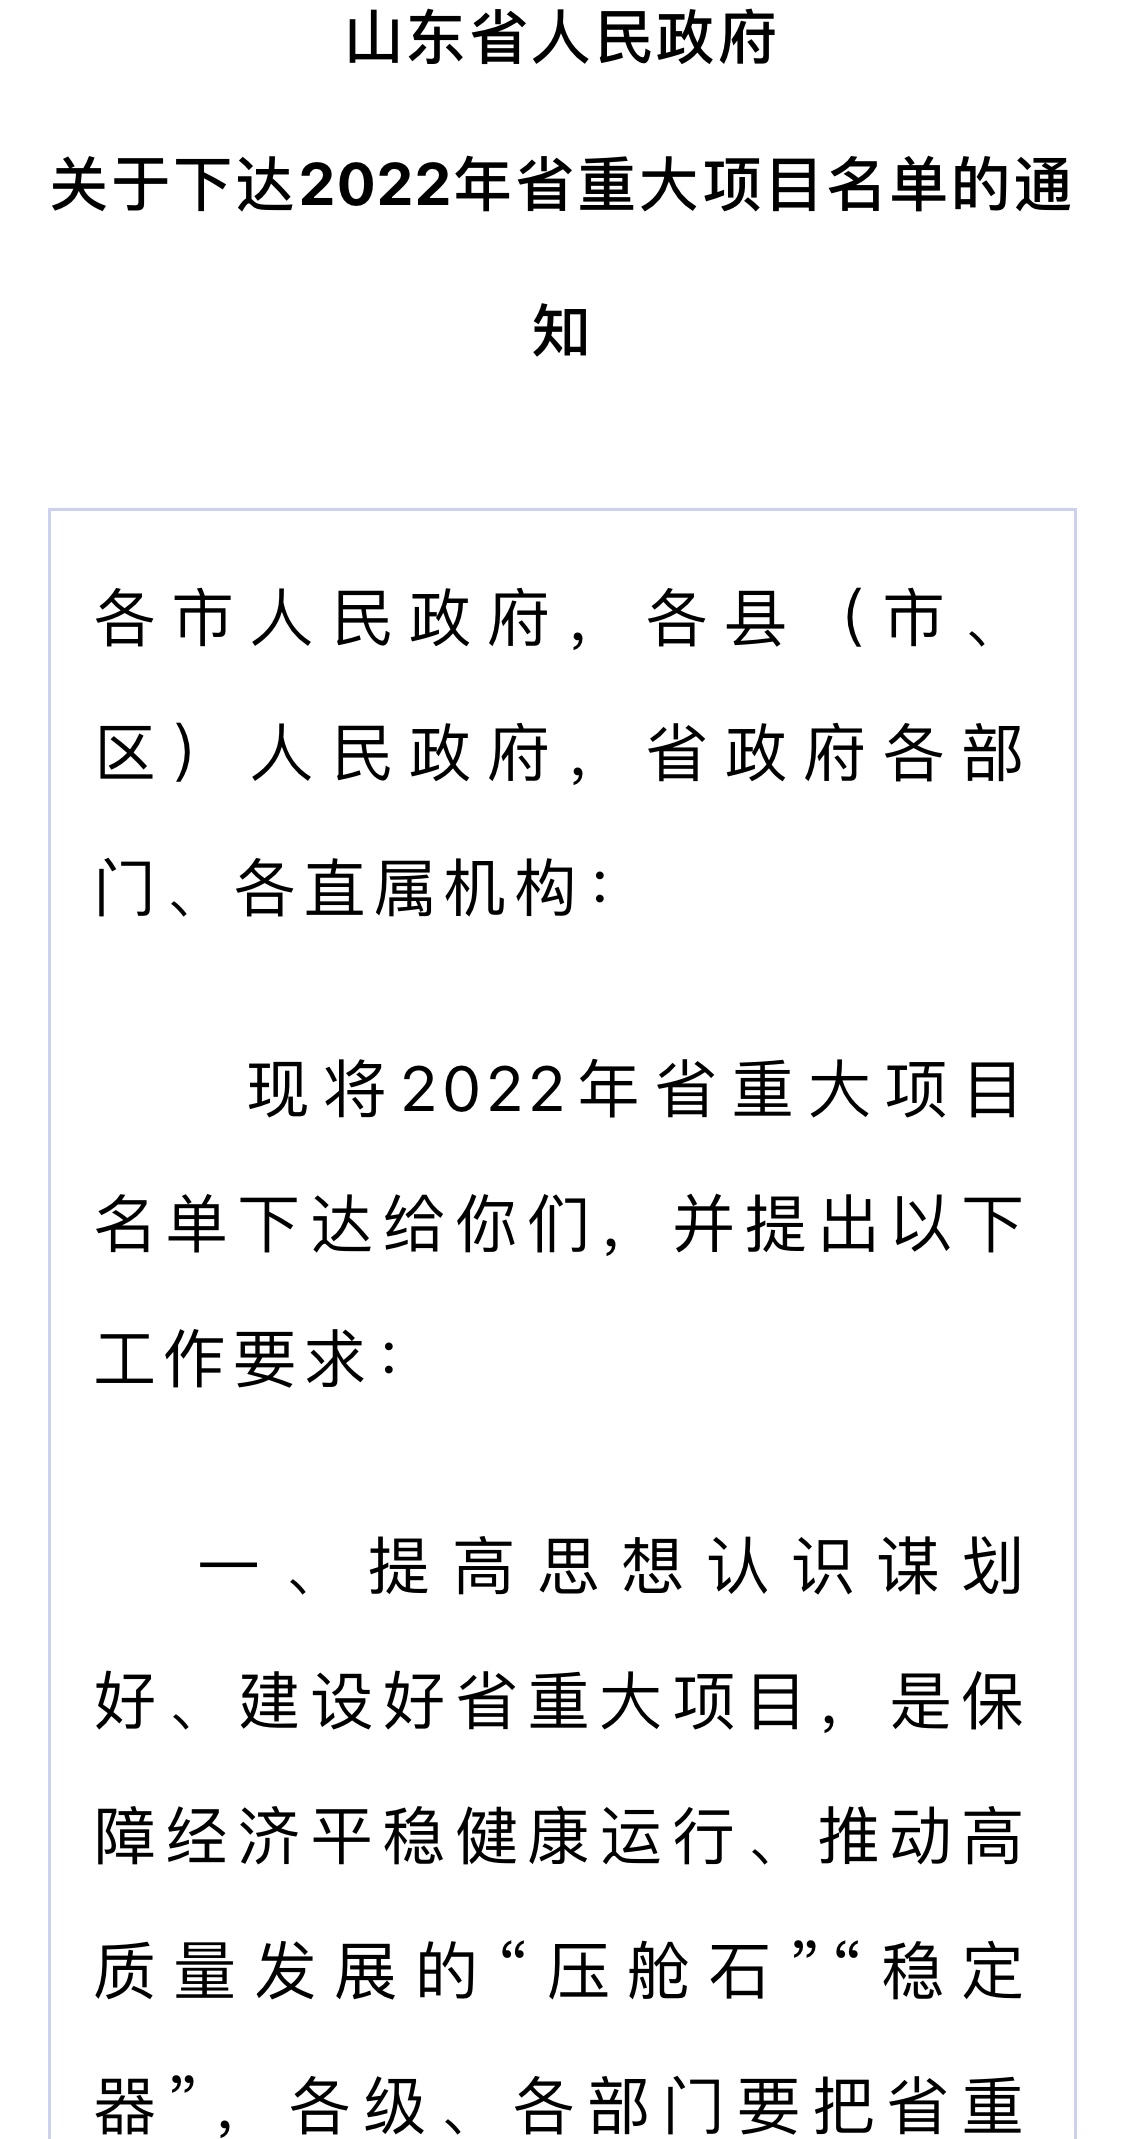 2022潍坊市主城区债权计划(潍坊市债务)